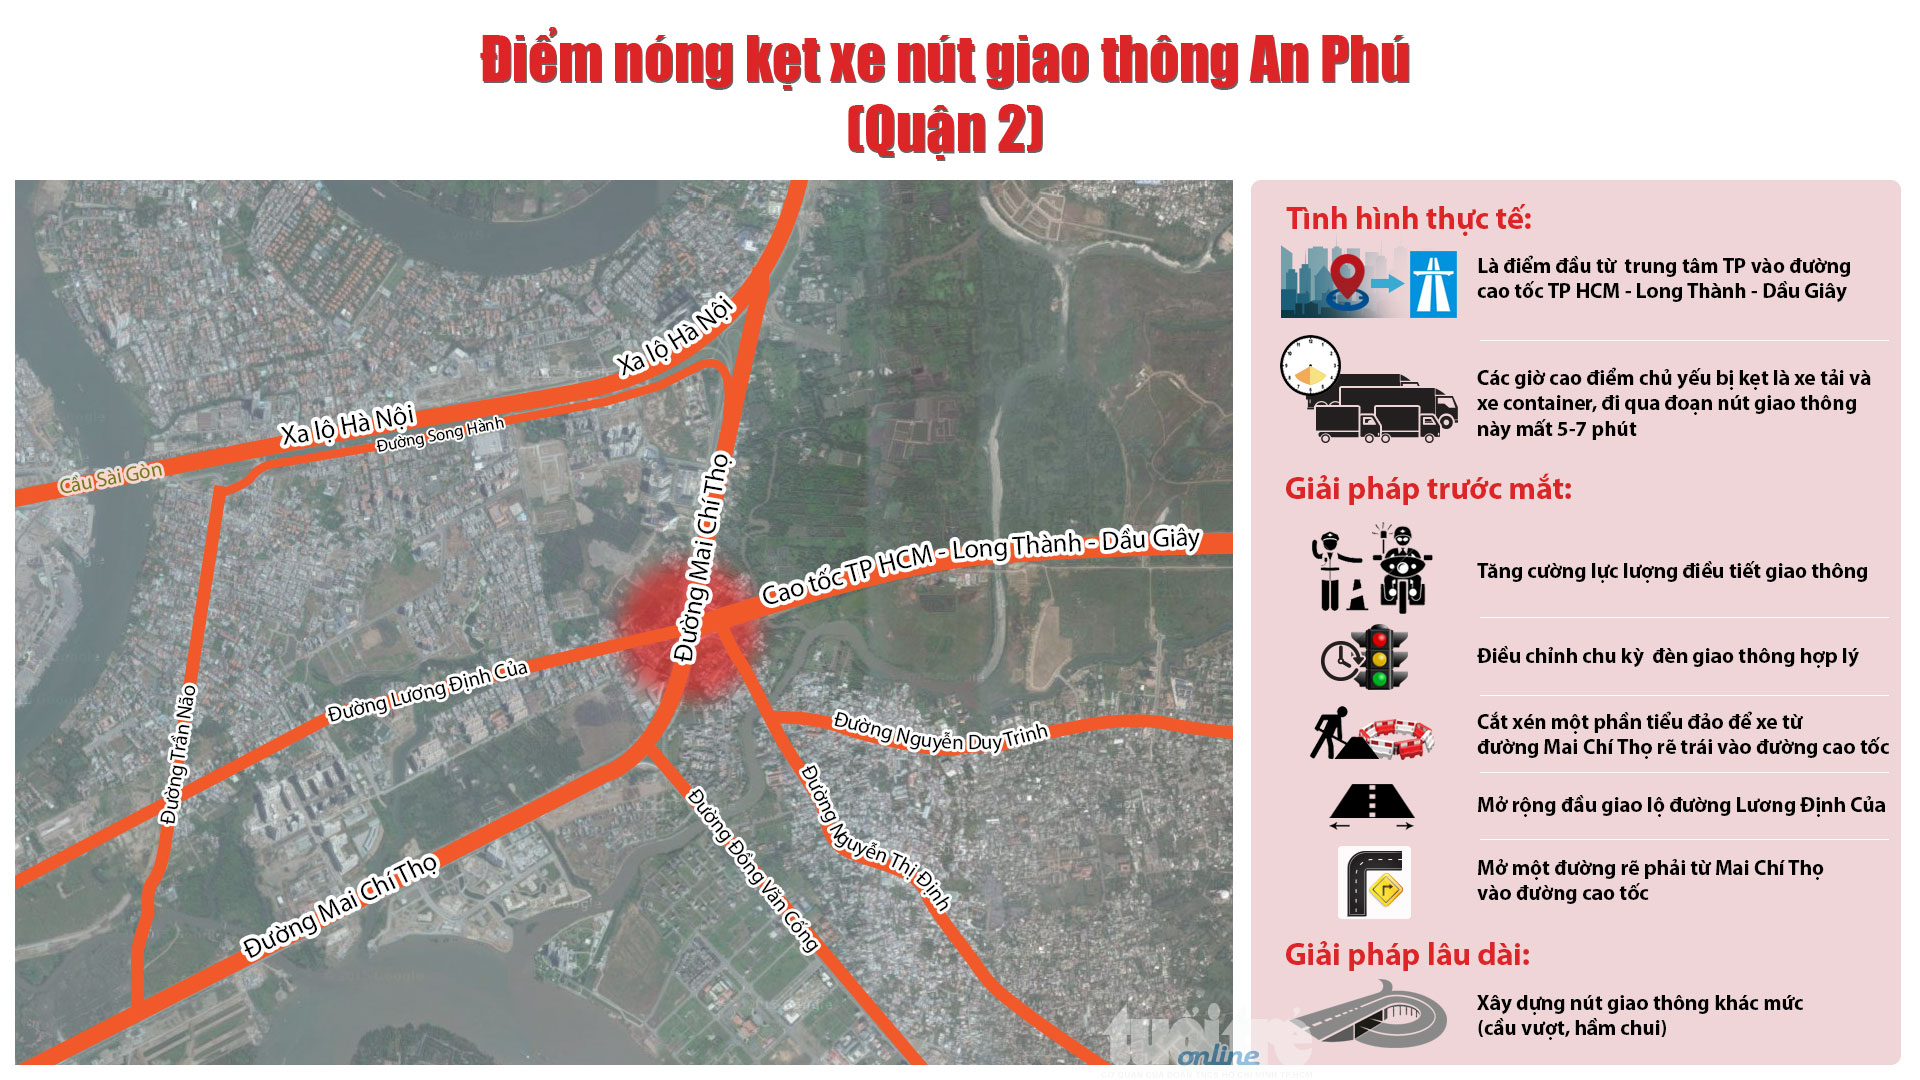 Điểm nóng kẹt xe nút giao thông An Phú (quận 2): thực trạng và giải pháp đề xuất - Đồ họa: Việt Thái - T.Thiên